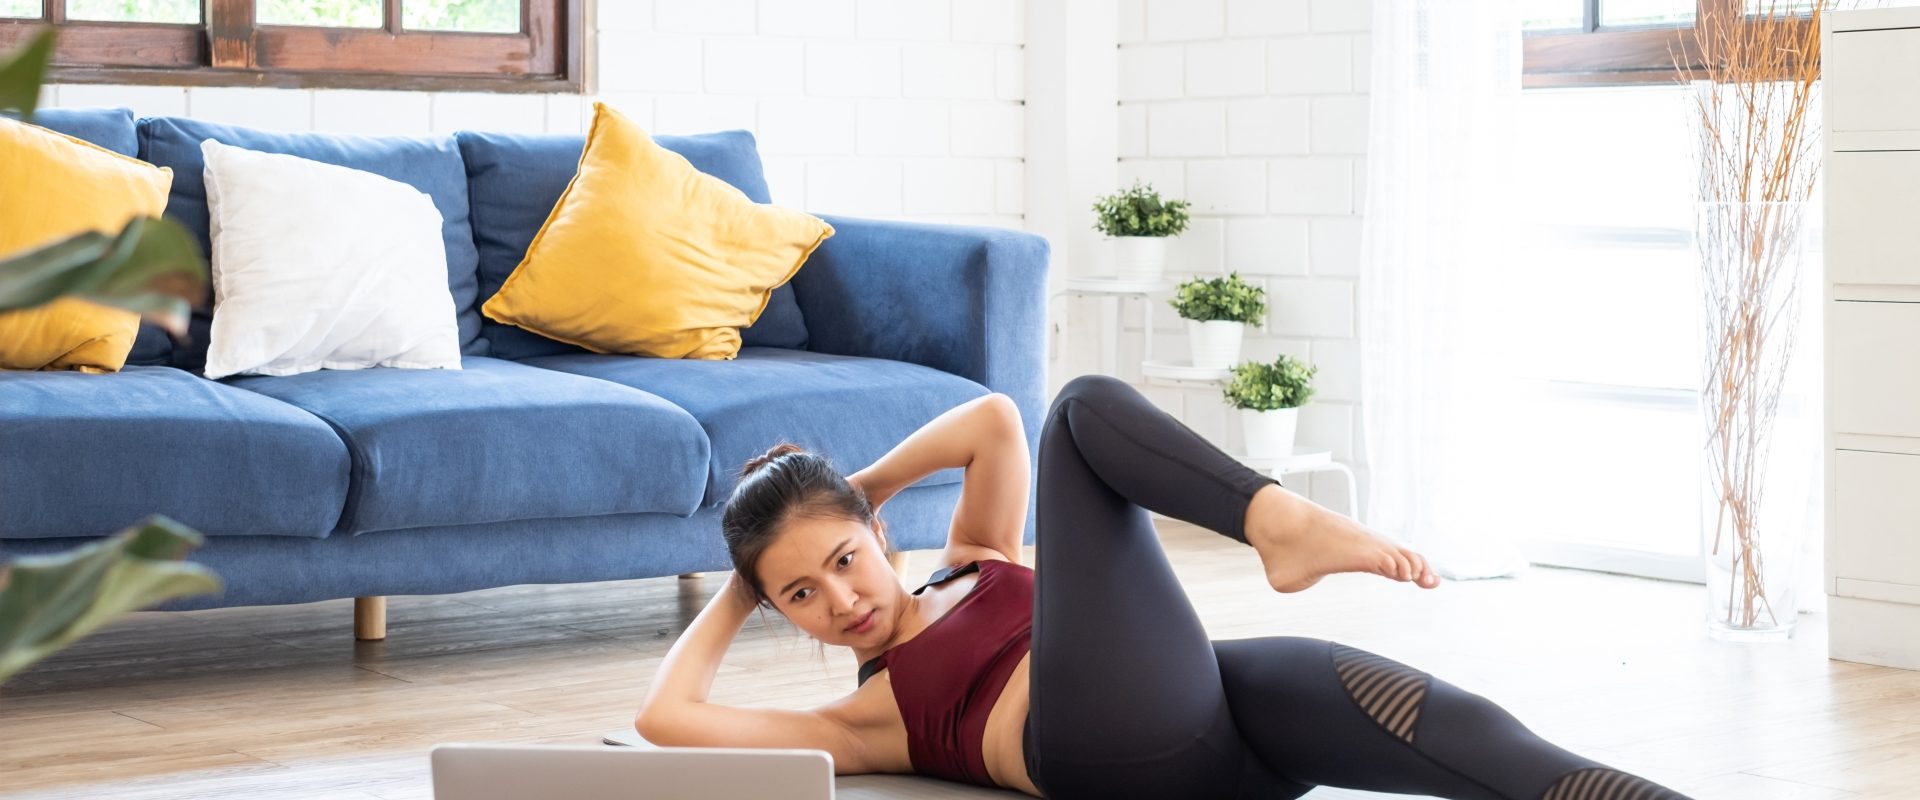 Ćwiczenia na kręgosłup piersiowy - jak je wykonać w domu? Kobieta ćwiczy na macie w salonie, patrząc w laptop, jak to robi trener online.